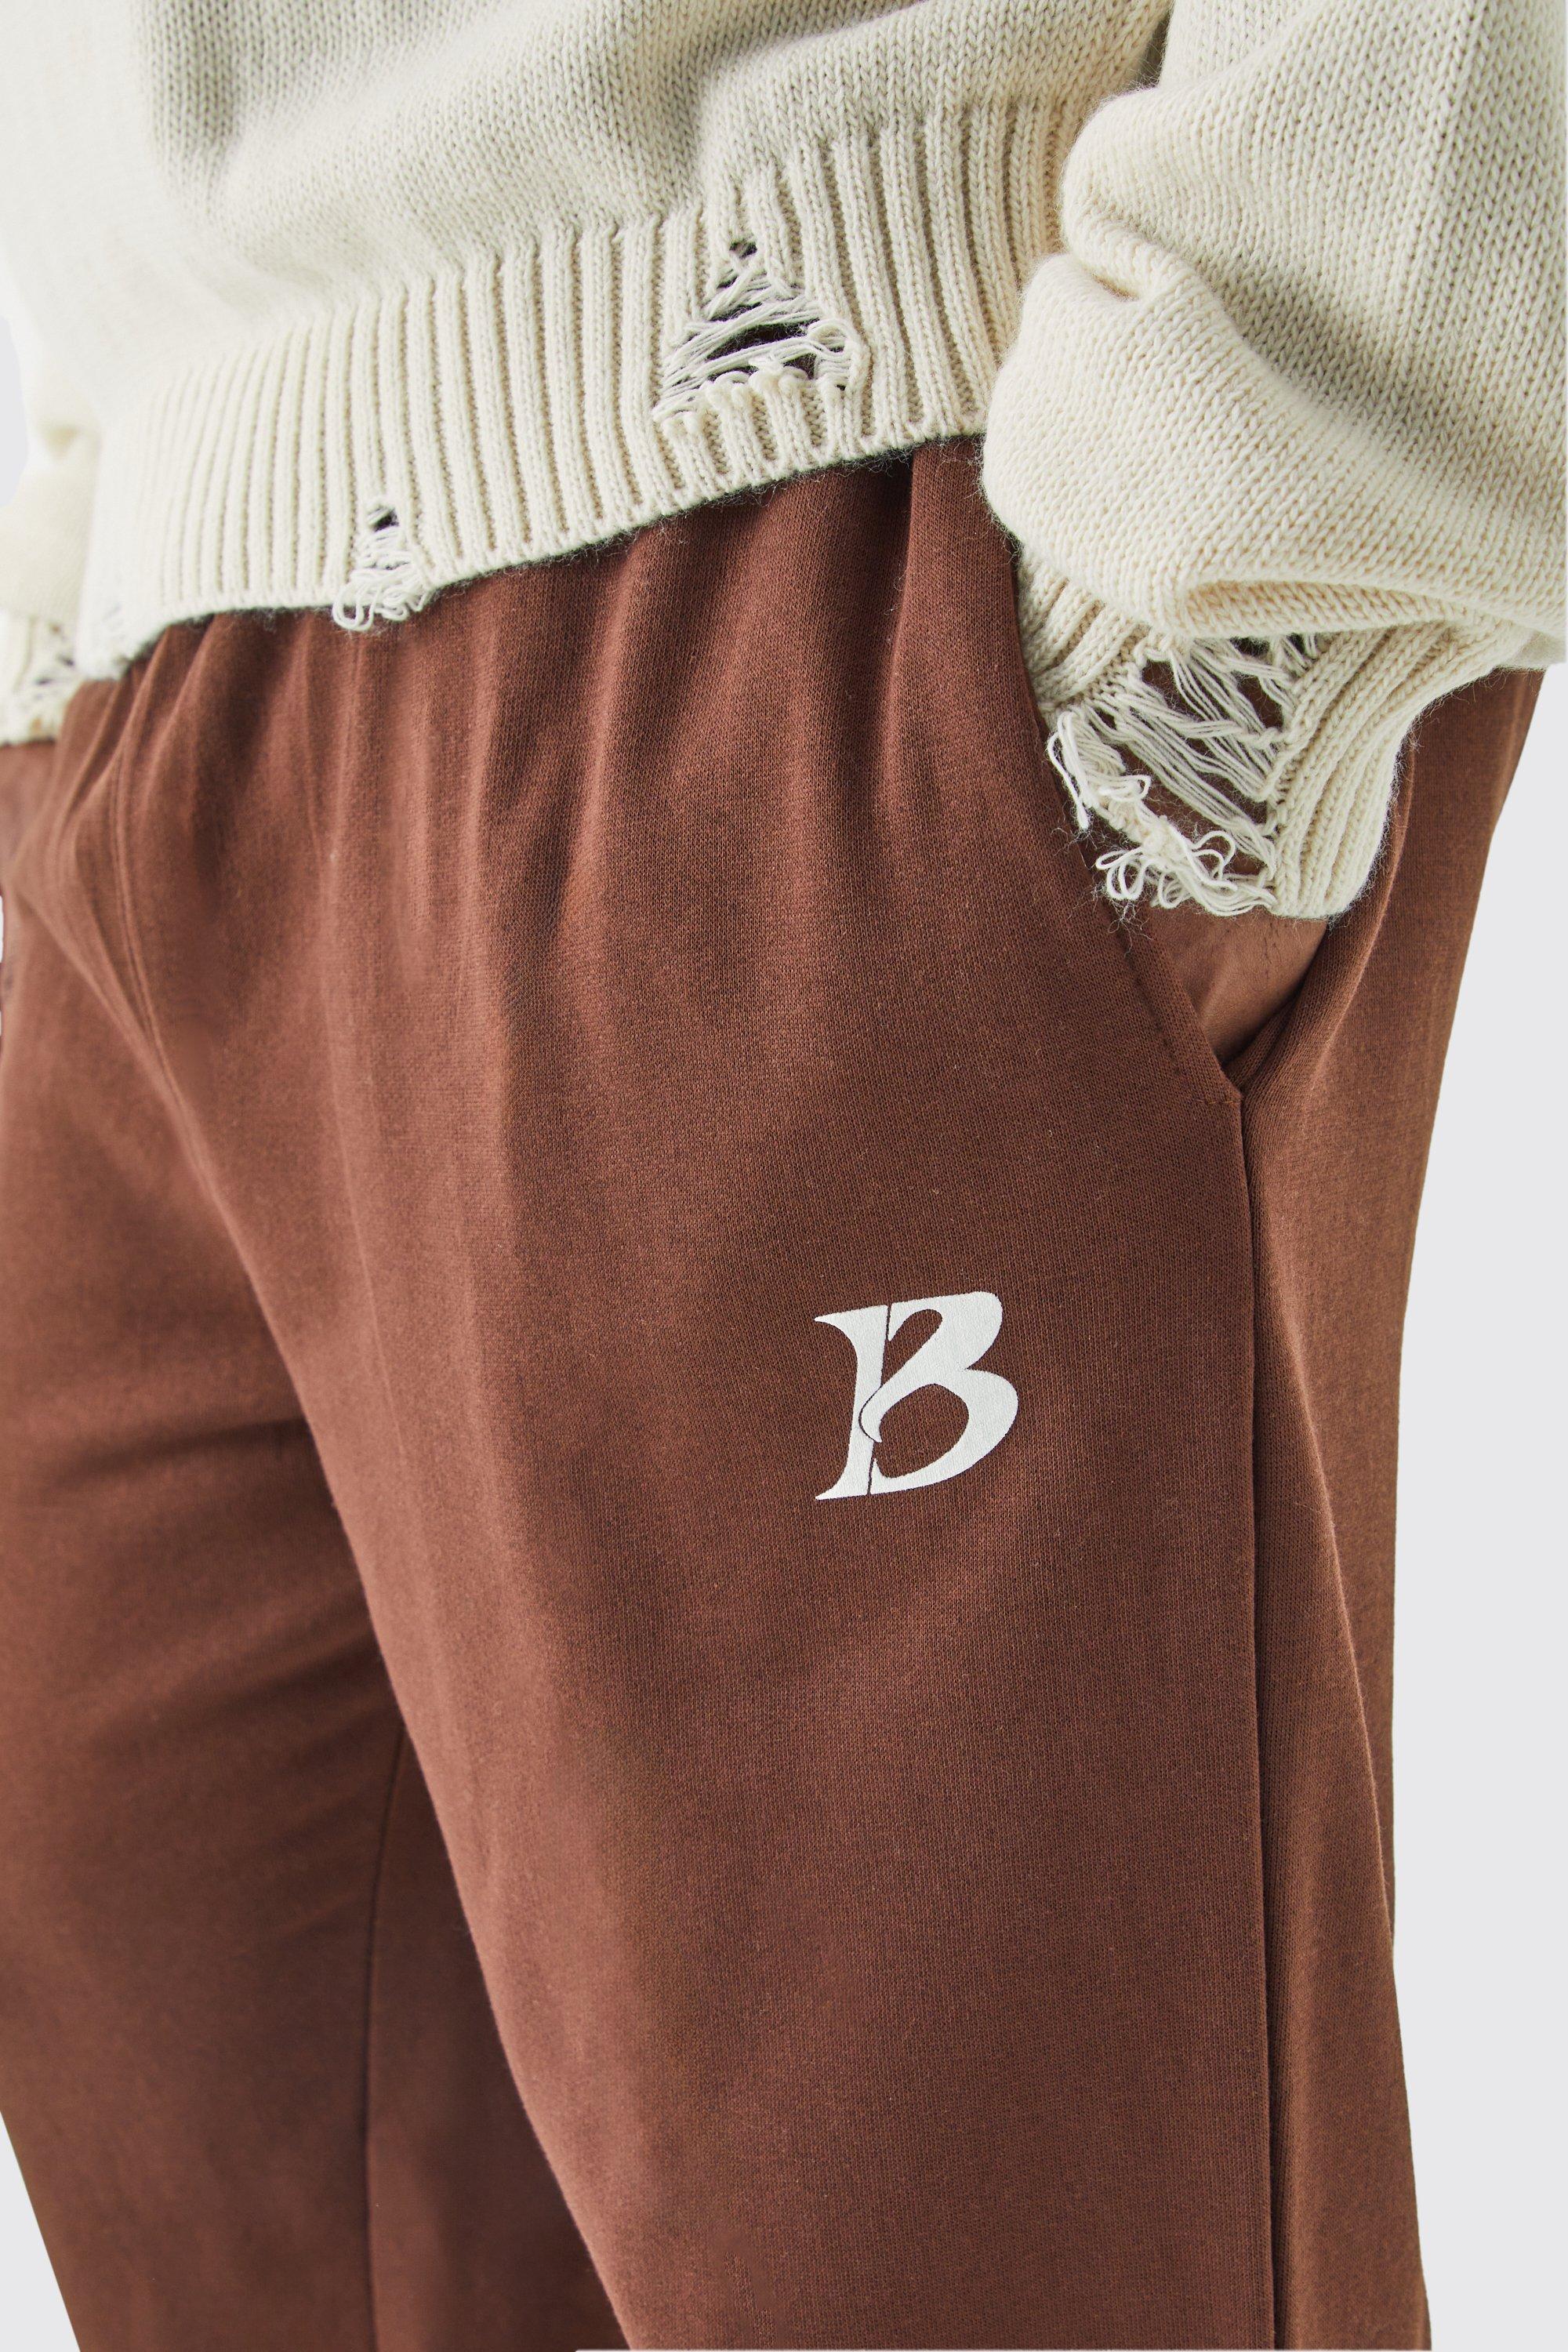 Image of Pantaloni tuta Plus Size color cioccolato con slogan Core B, Brown